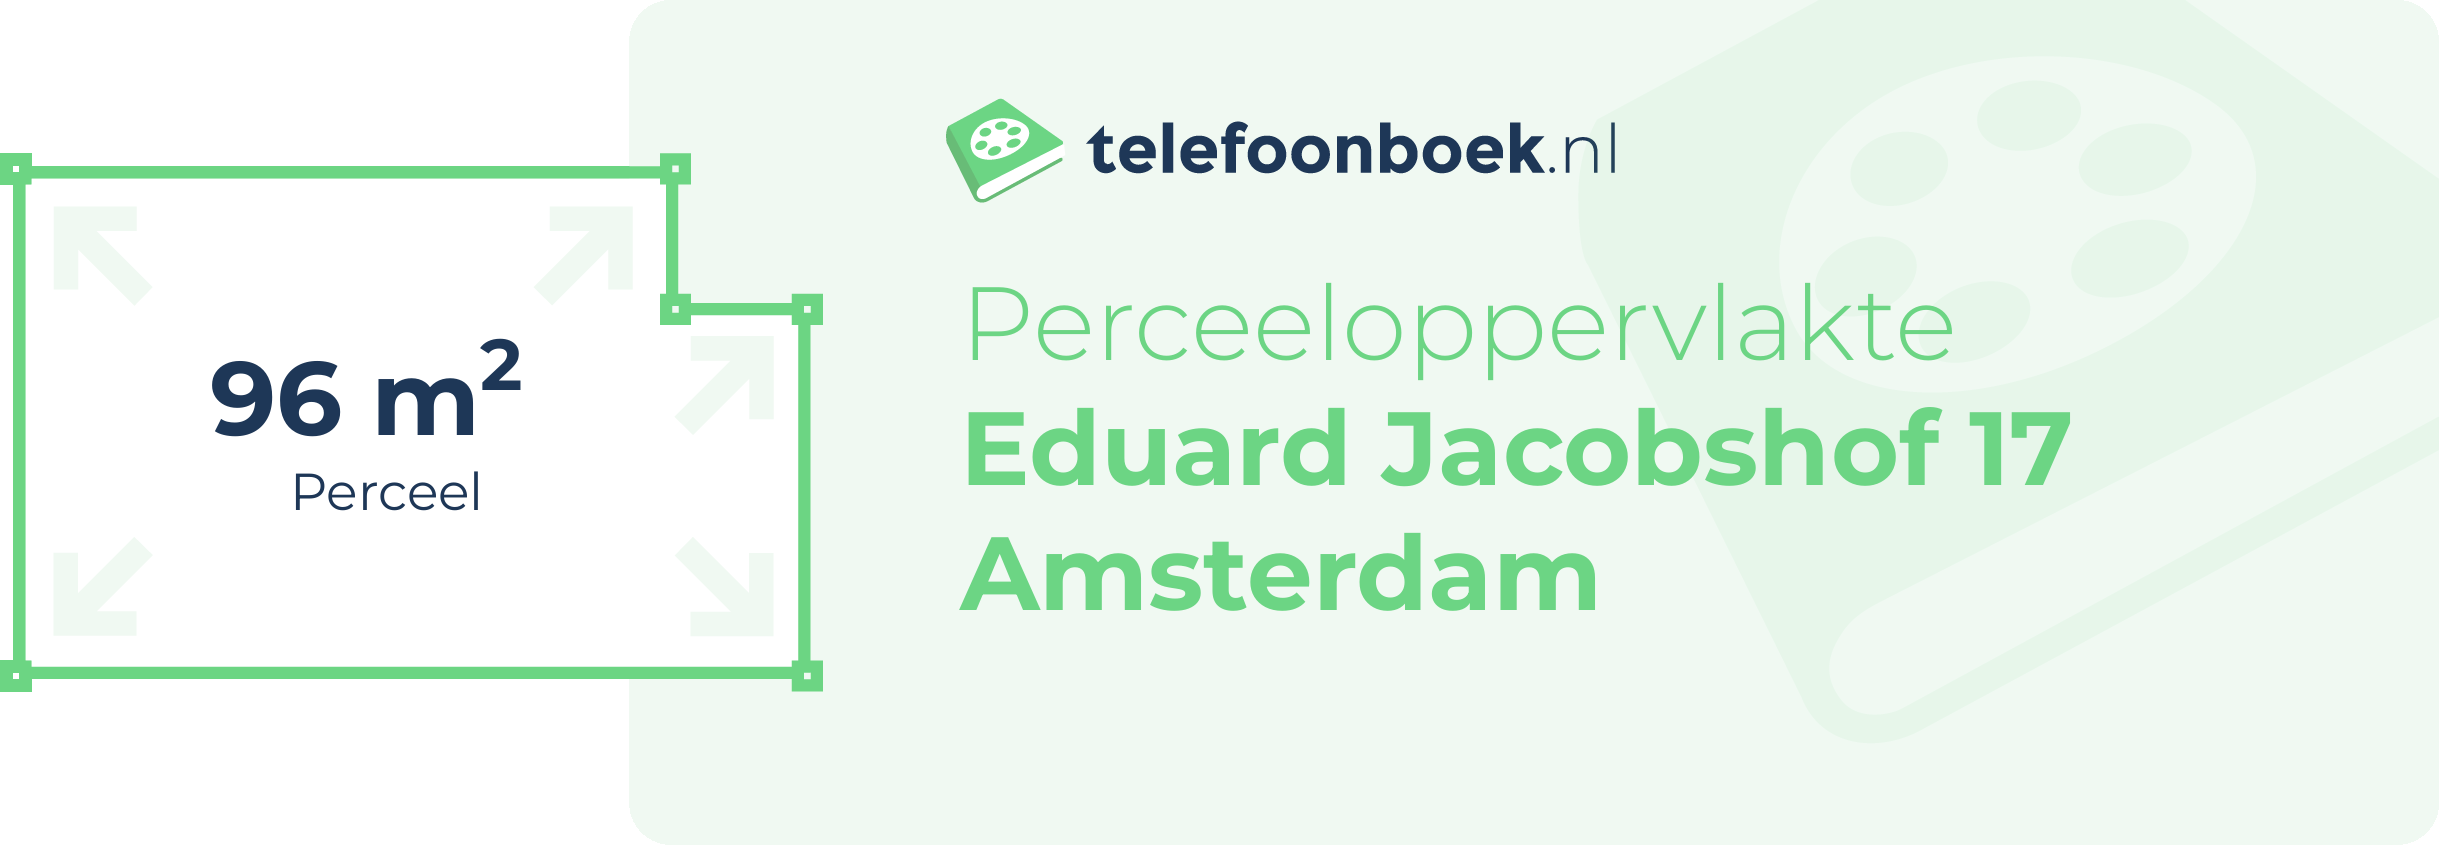 Perceeloppervlakte Eduard Jacobshof 17 Amsterdam